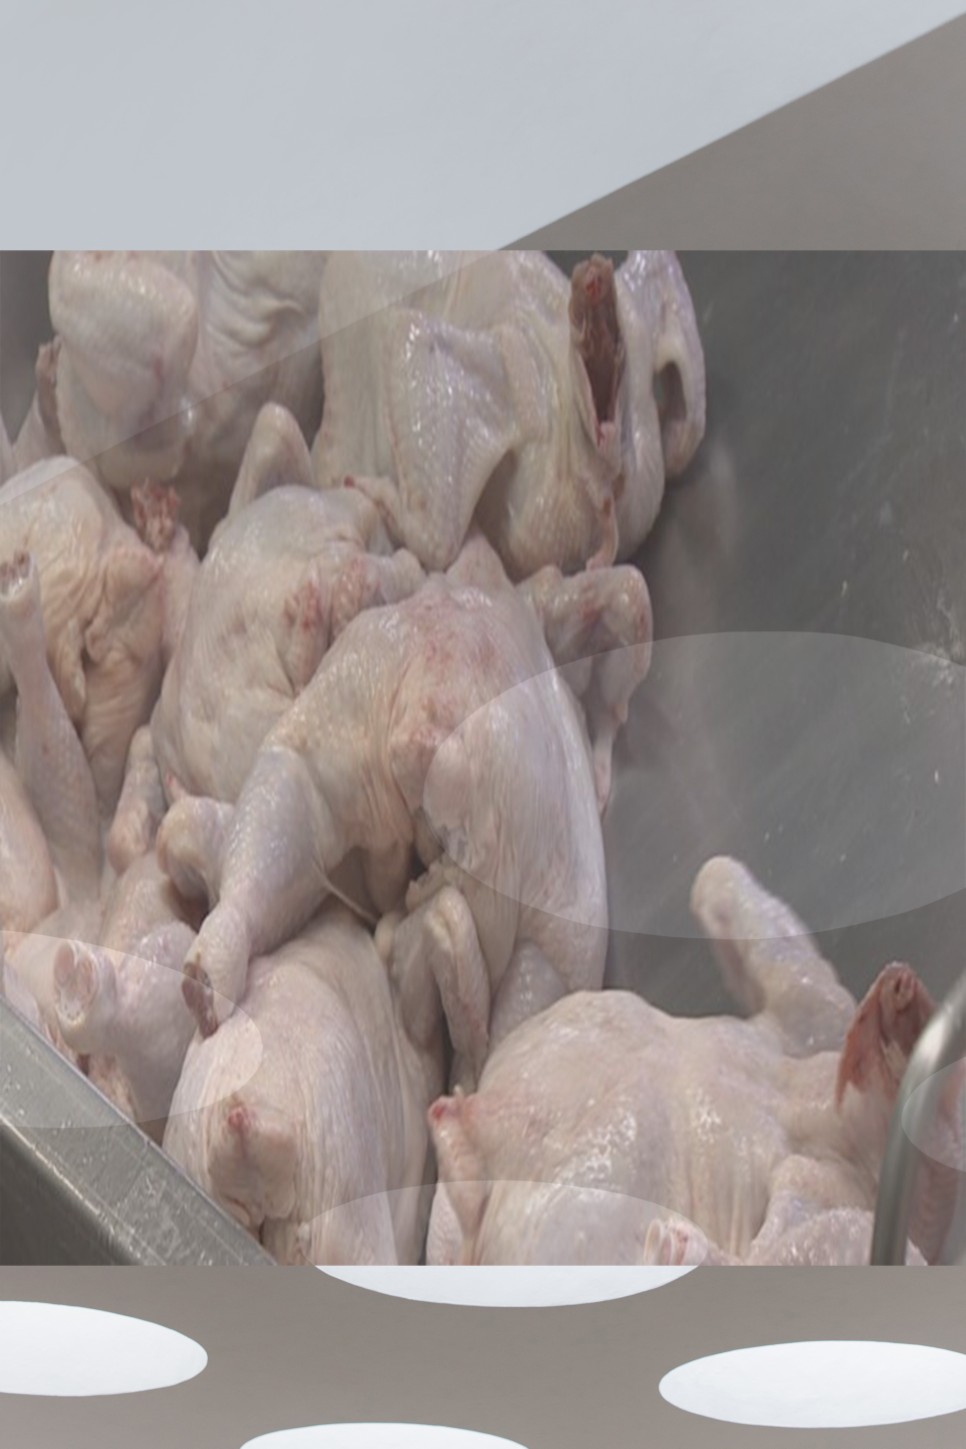 asf 발생 닭고기 육계 관련주 ASF발생 및 삼겹살 가격 급등에 13